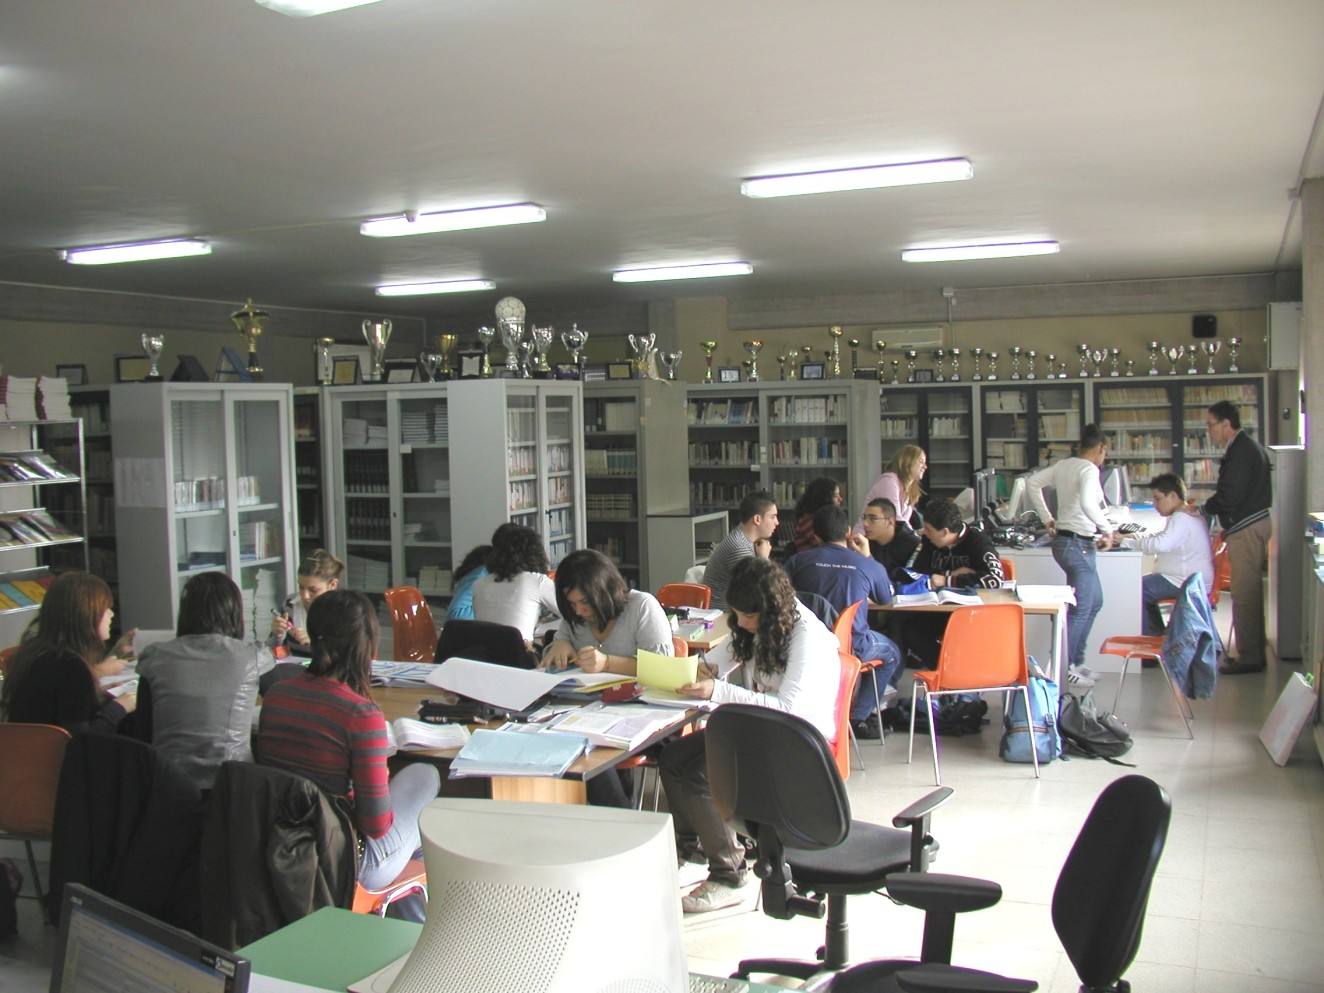 Biblioteca Rosario Livatino La scuola rende disponibili appositi spazi per: - bacheca sindacale - bacheca degli studenti - bacheca dei genitori - bacheca dei